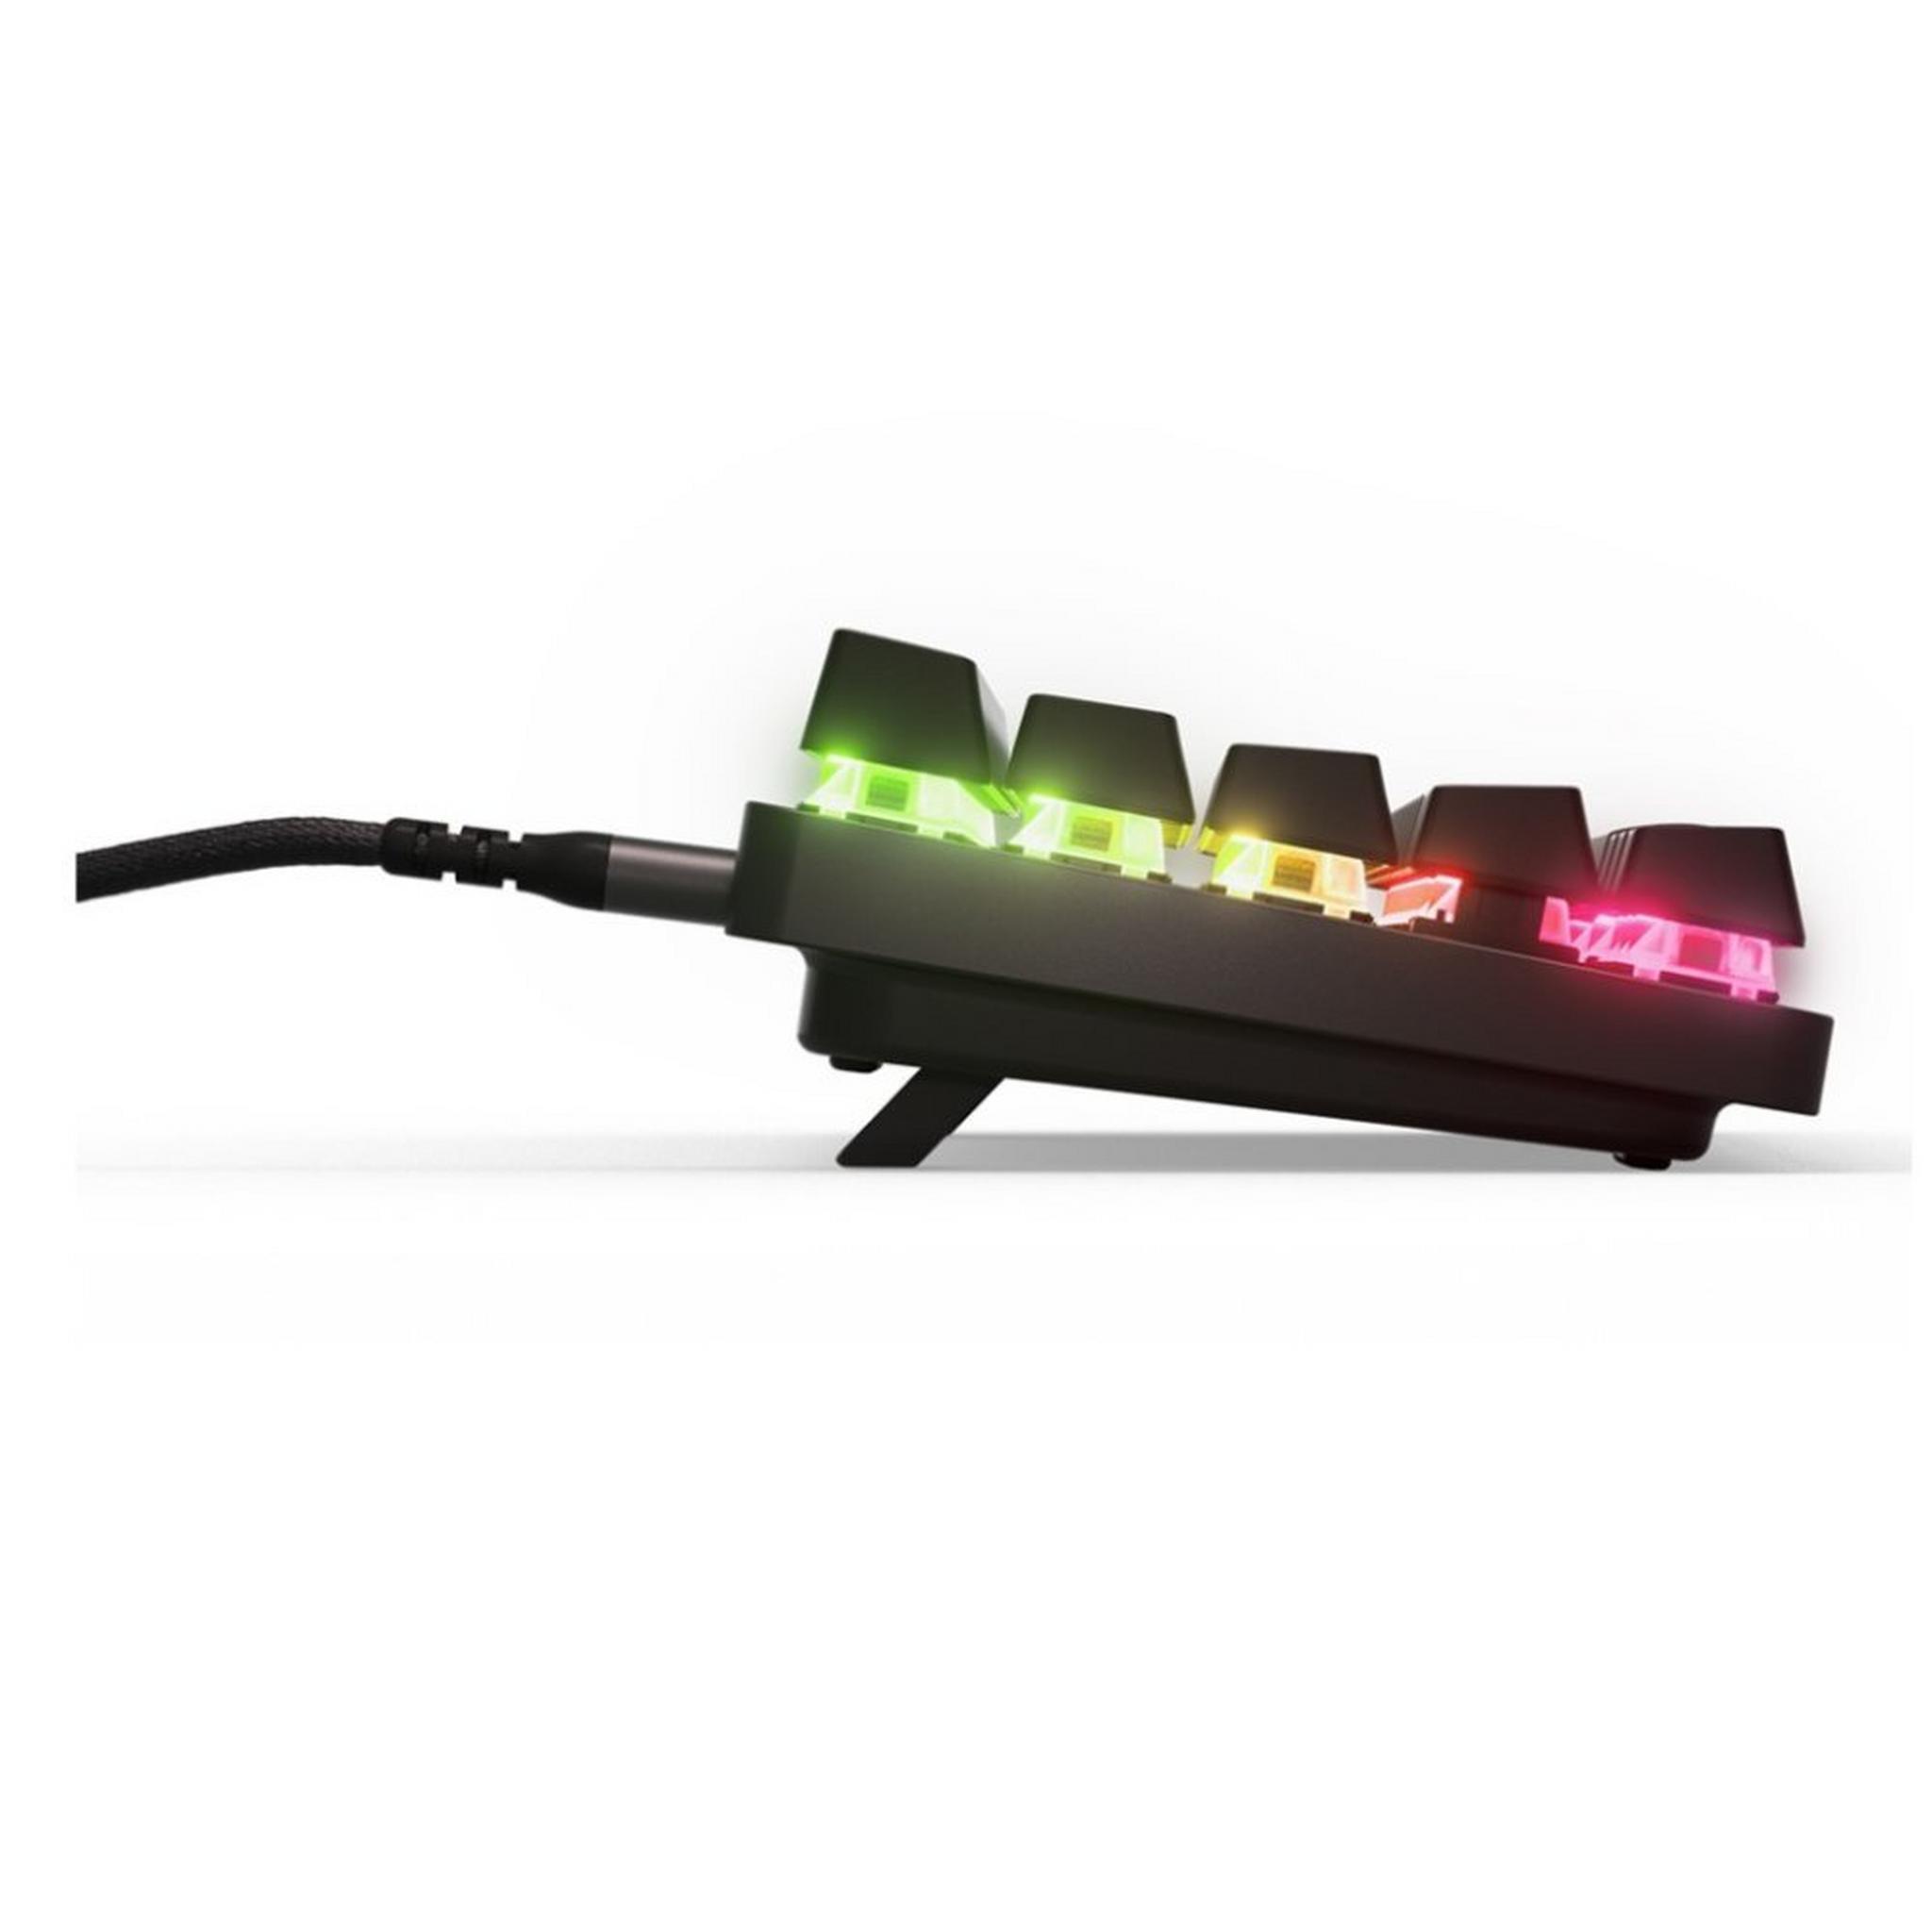 SteelSeries Apex Pro Mini US RGB Wireless Keyboard